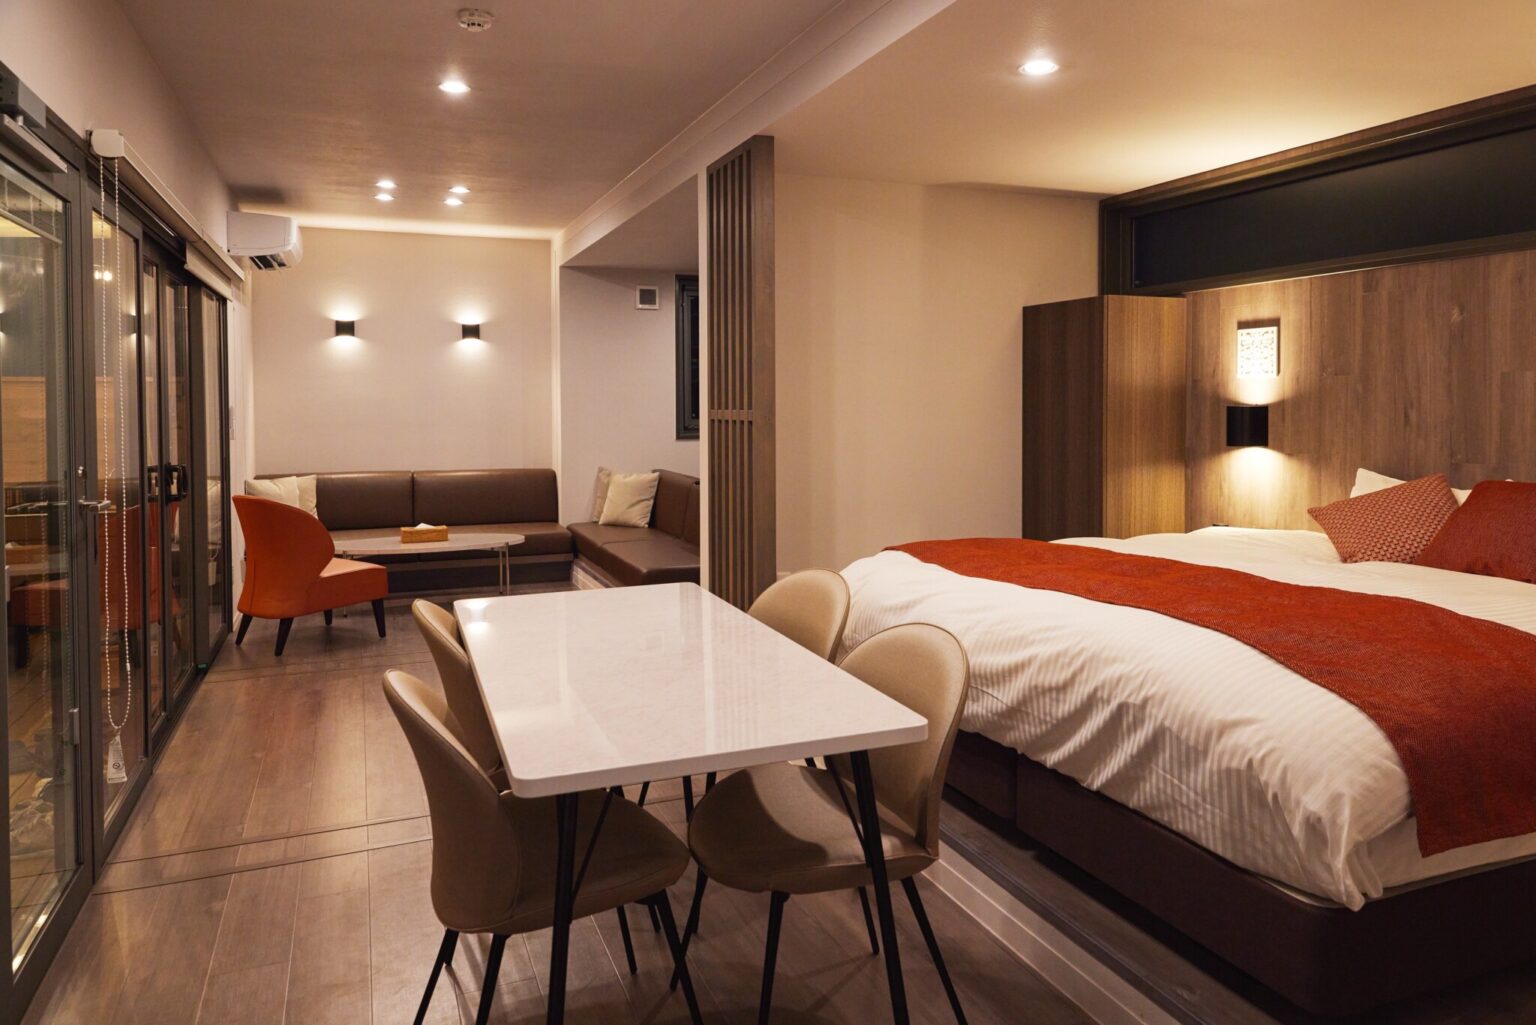 「SAUNA Suite Villa」室内。ダブルベッドを2つ完備。4名まで宿泊可能。